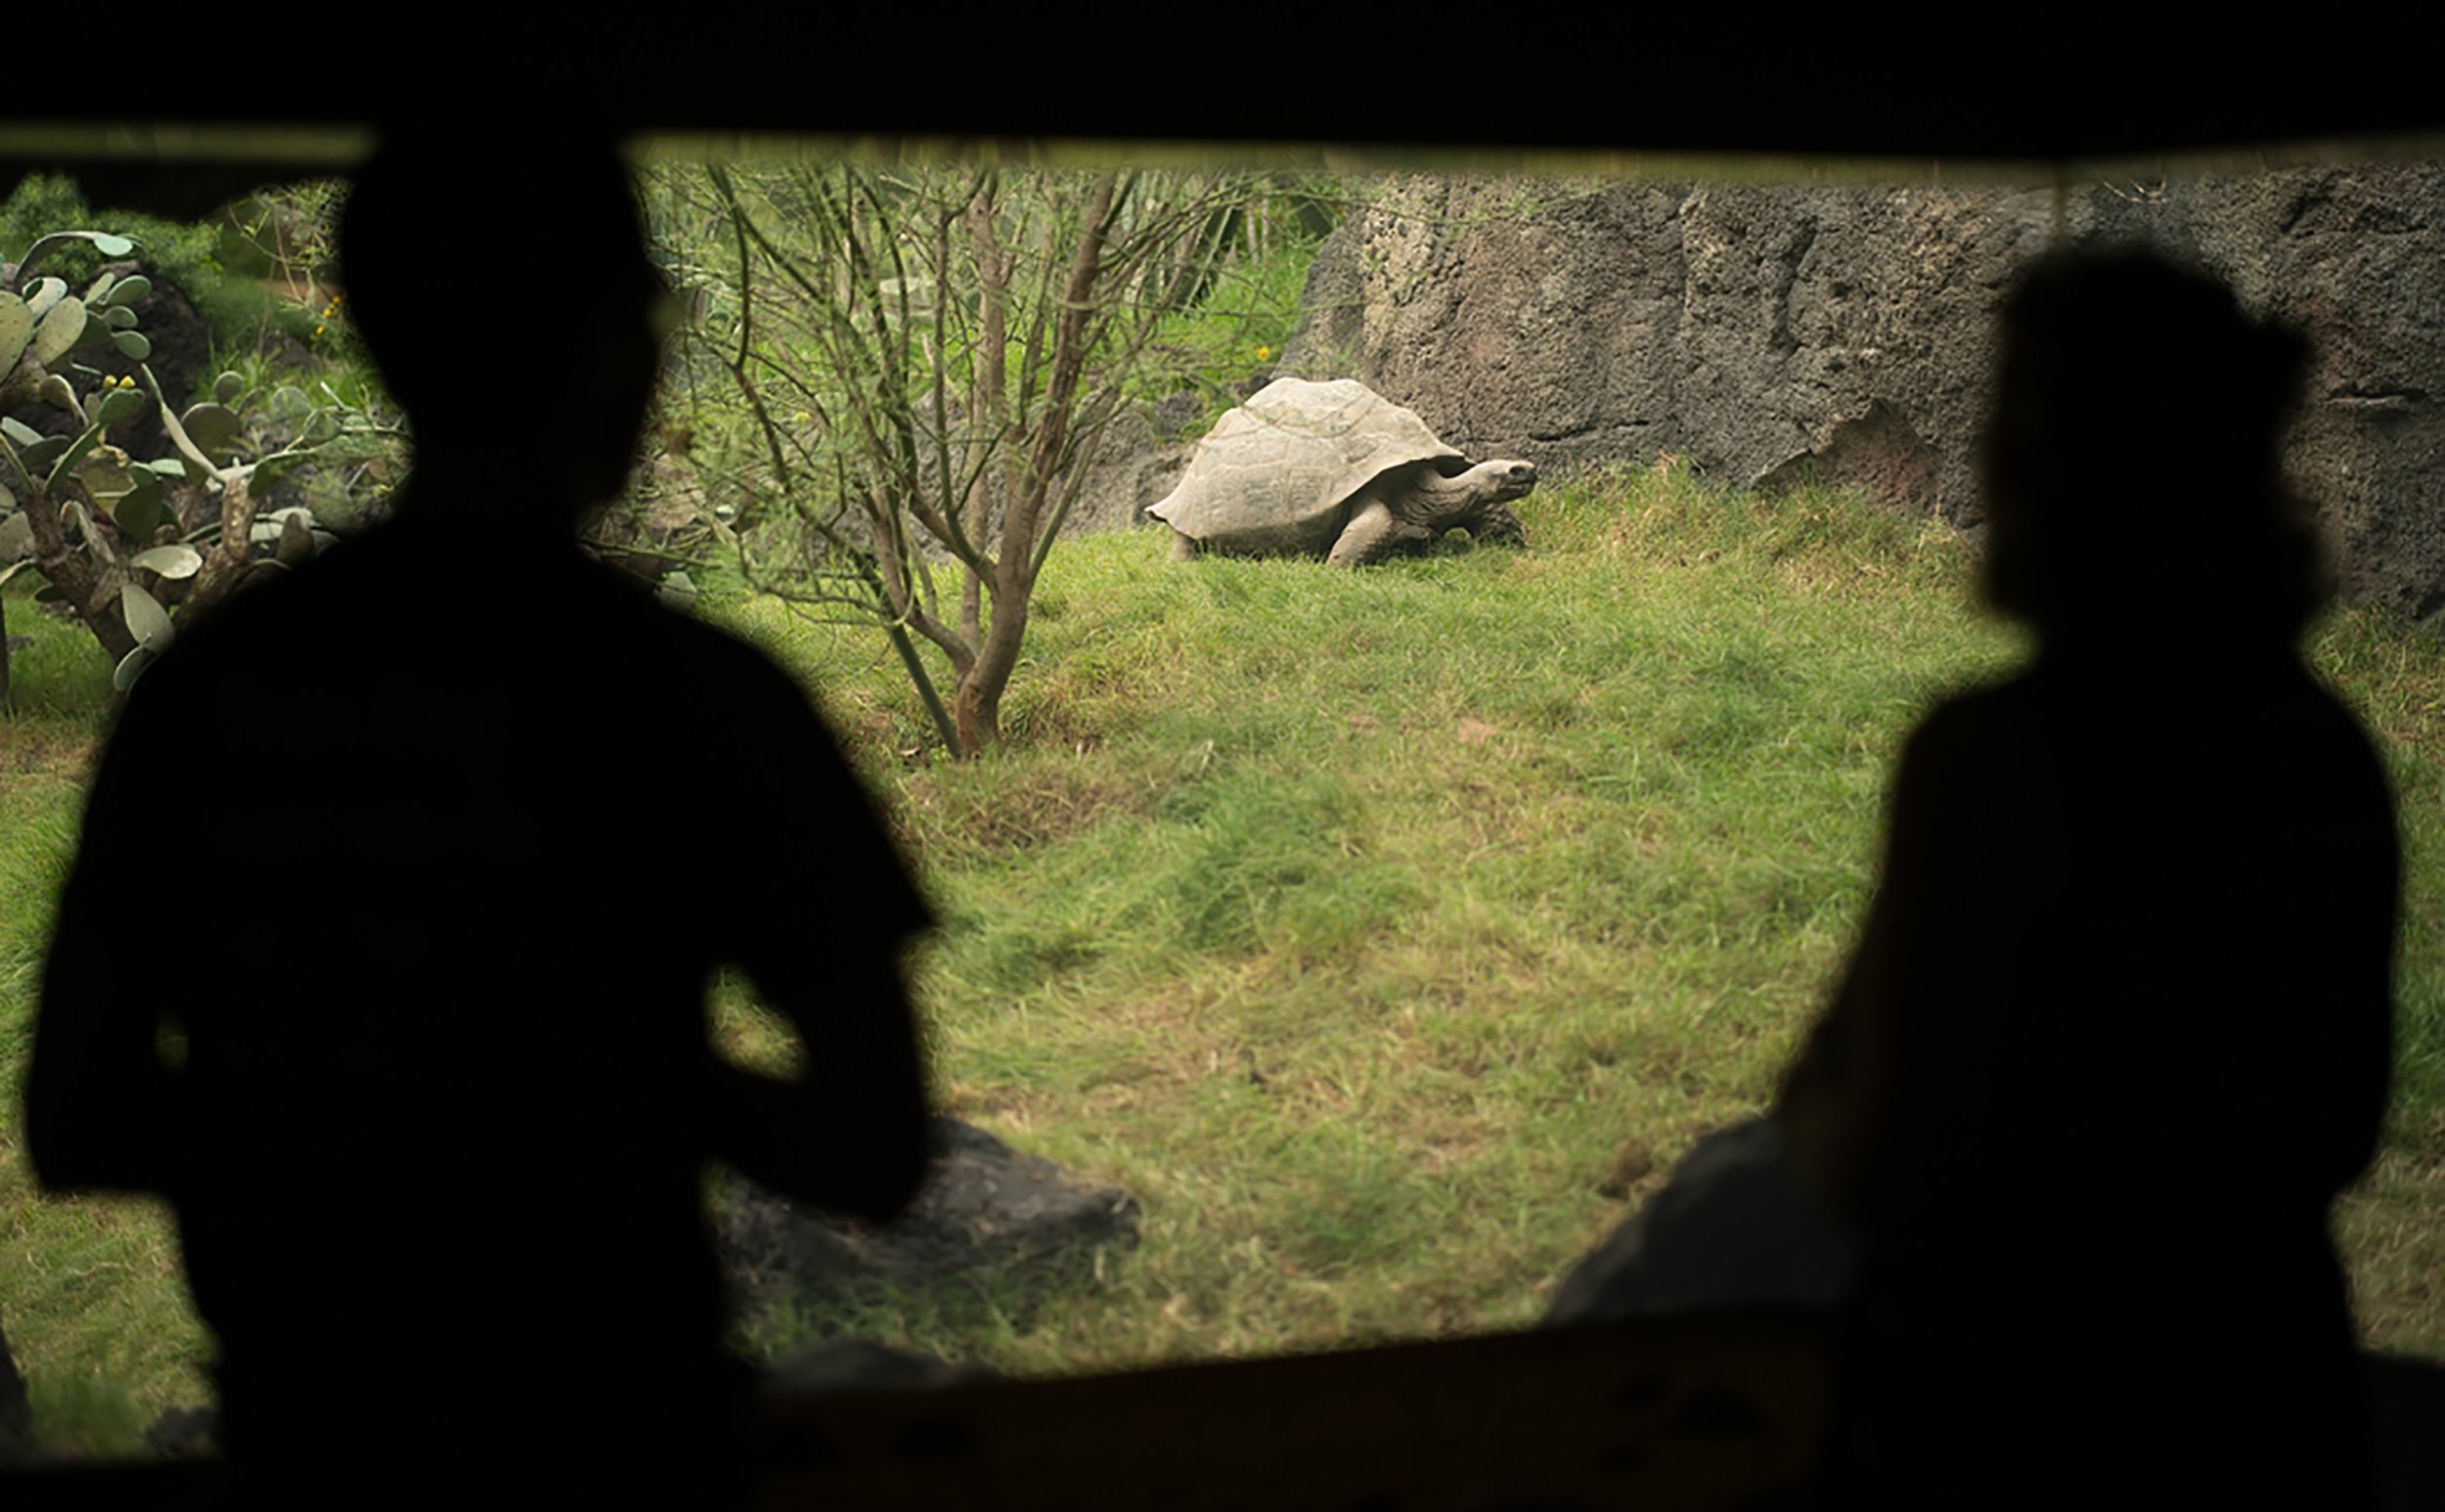   Photo: D. Ortiz, Houston Zoo  